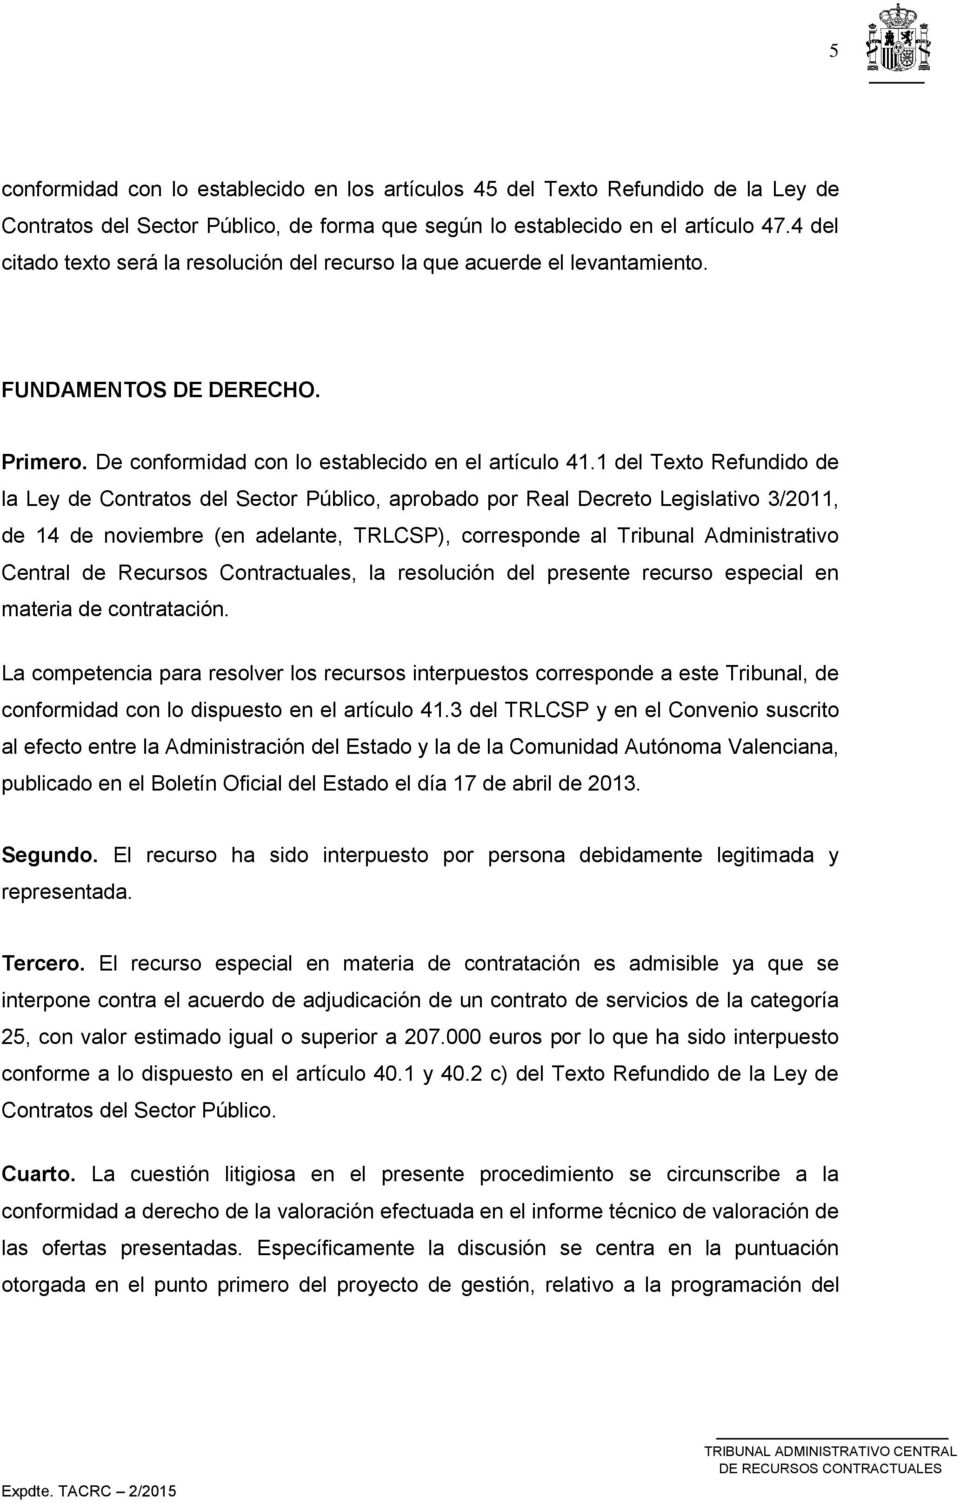 1 del Texto Refundido de la Ley de Contratos del Sector Público, aprobado por Real Decreto Legislativo 3/2011, de 14 de noviembre (en adelante, TRLCSP), corresponde al Tribunal Administrativo Central